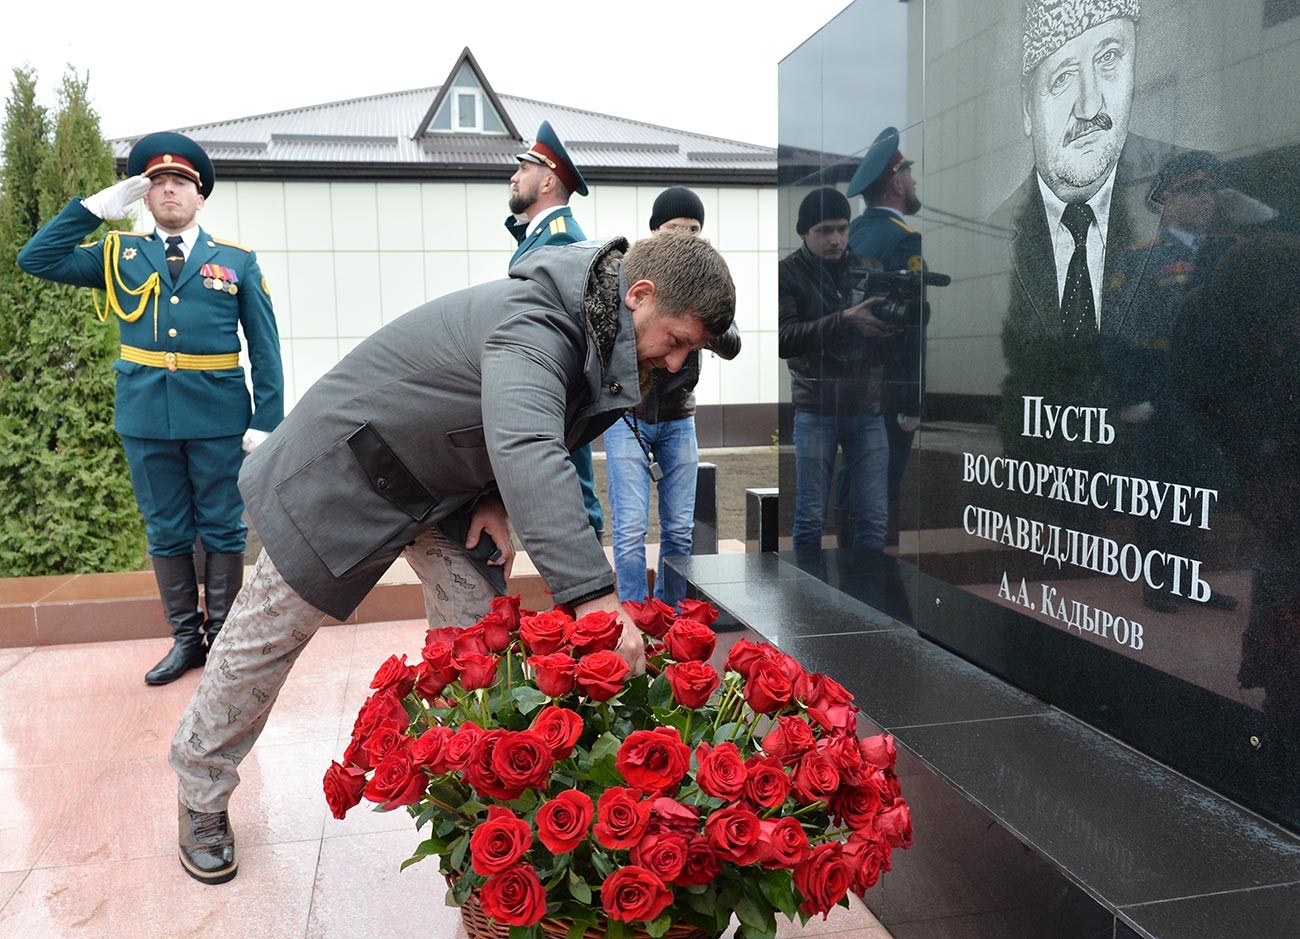 Chechen head Ramzan Kadyrov at his father’s memorial.
